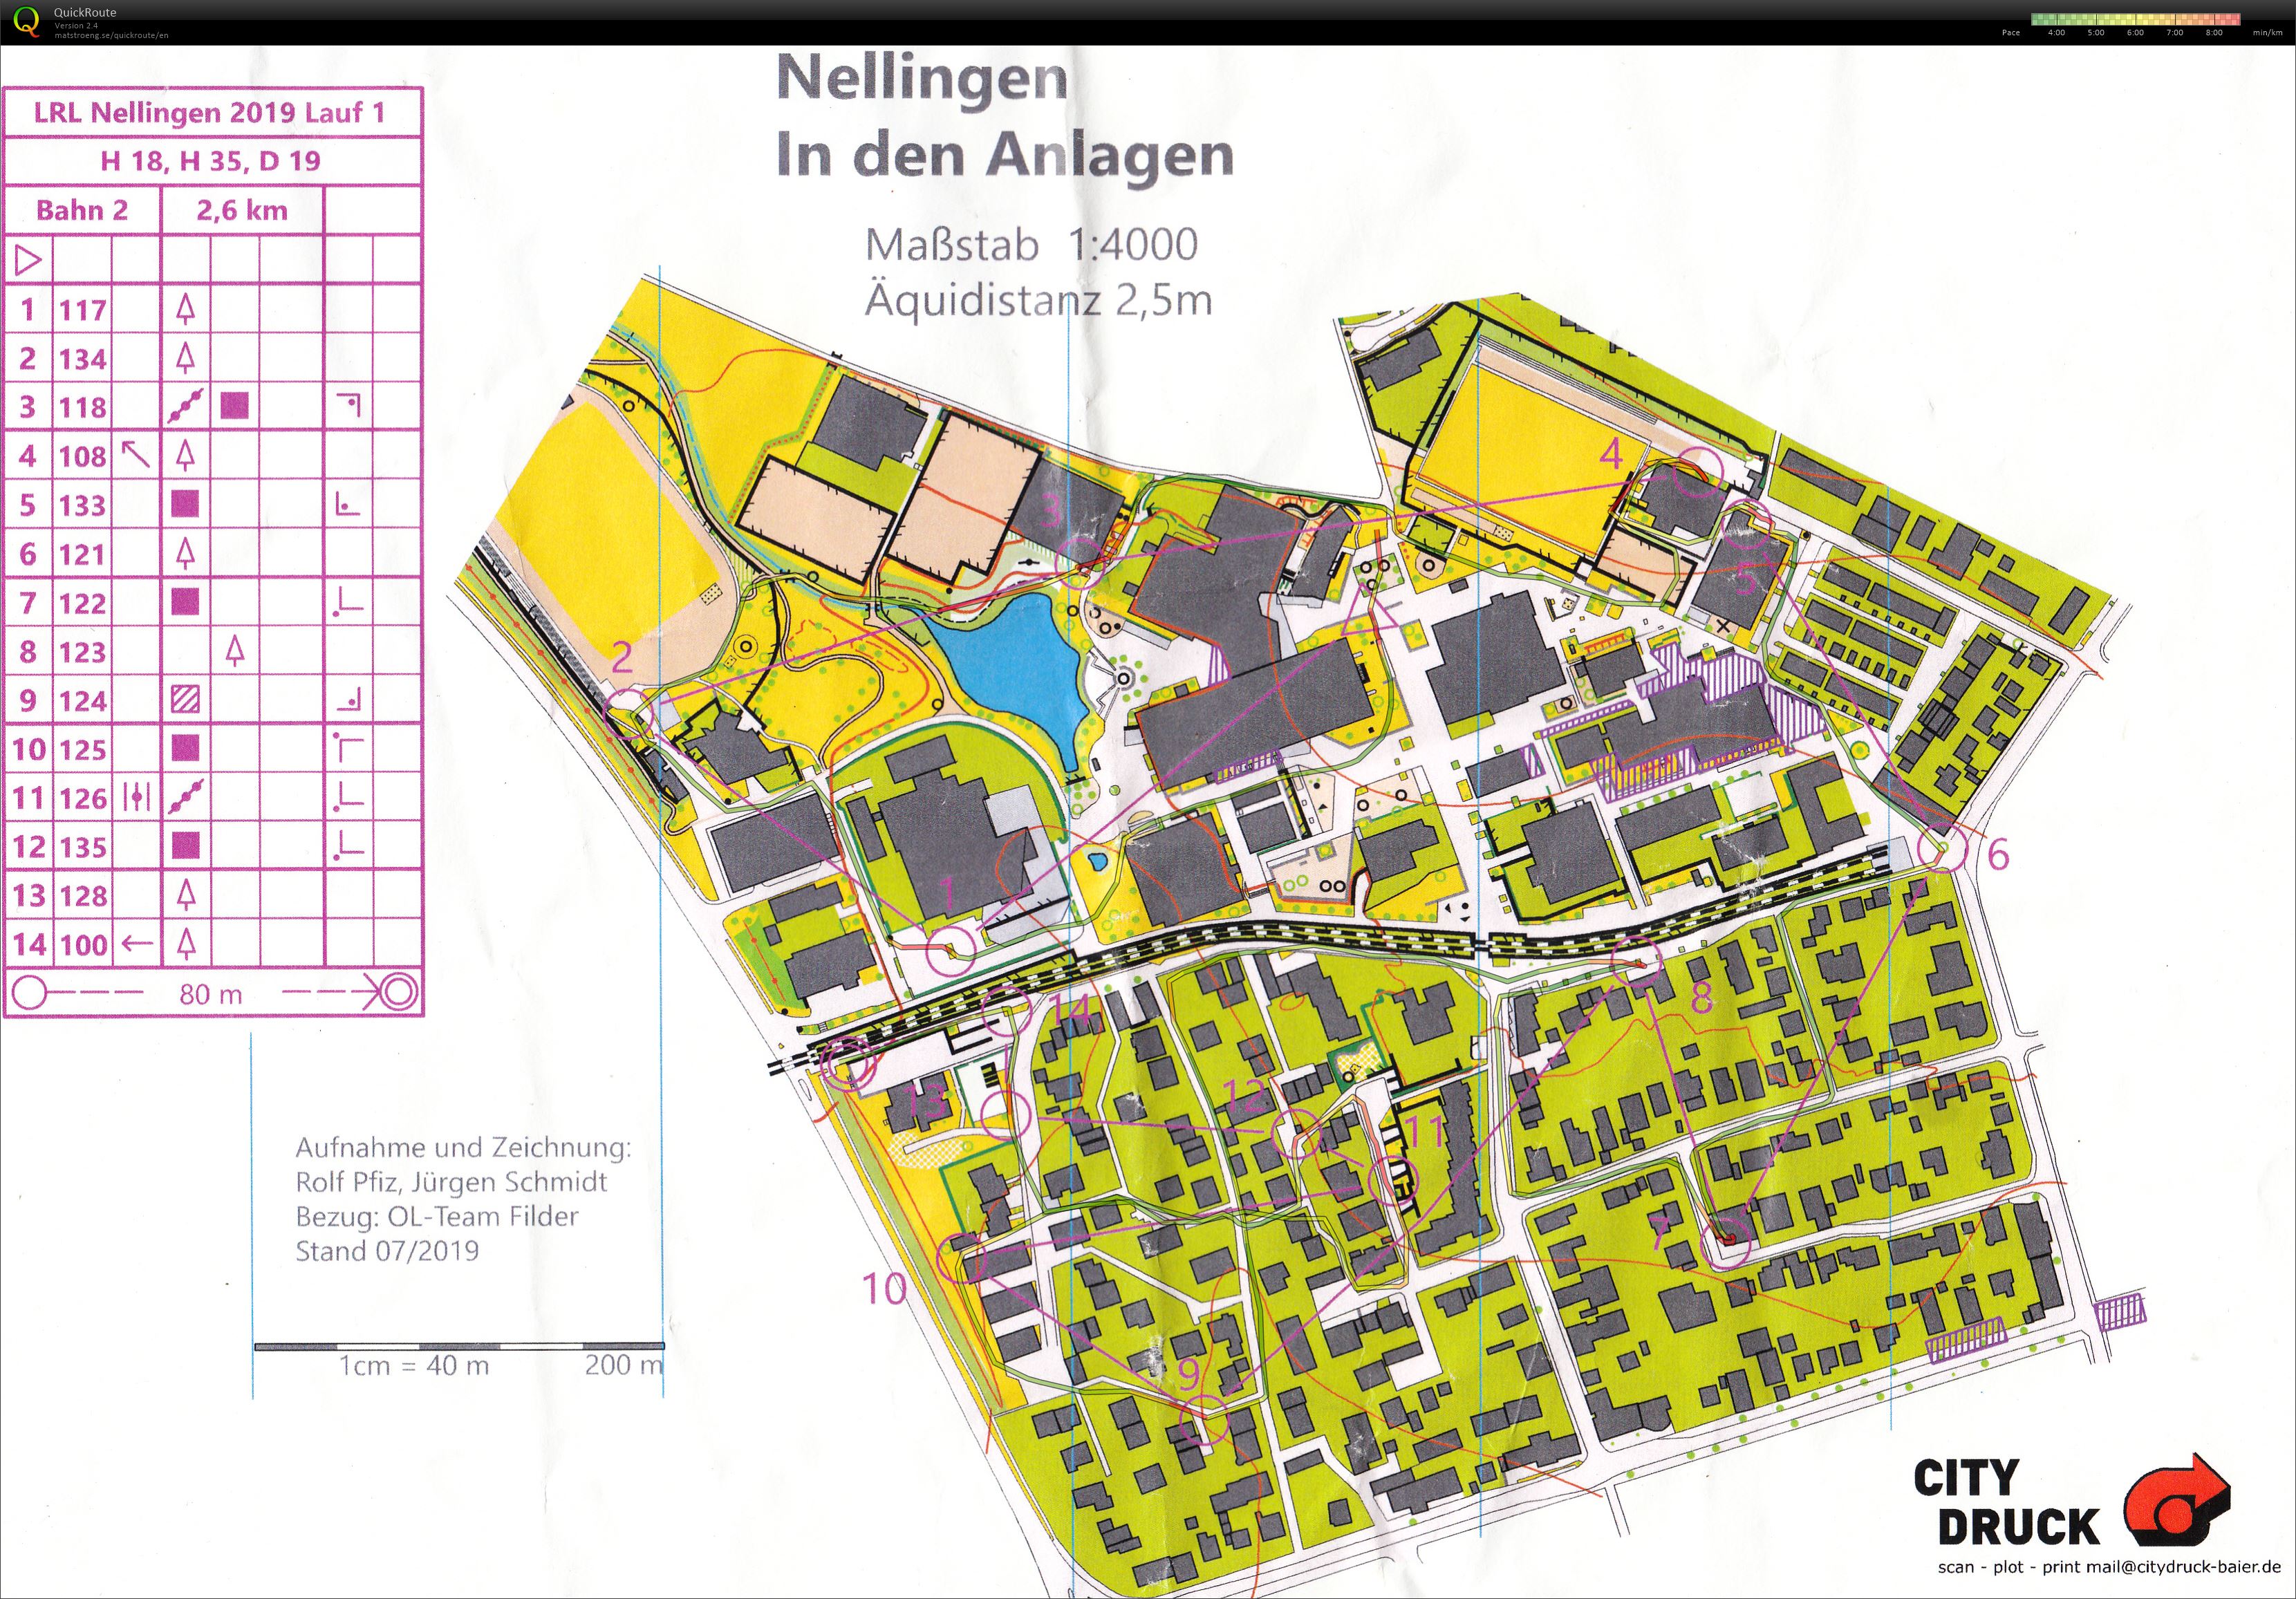 LRL Nellingen - 1 (2019-07-20)